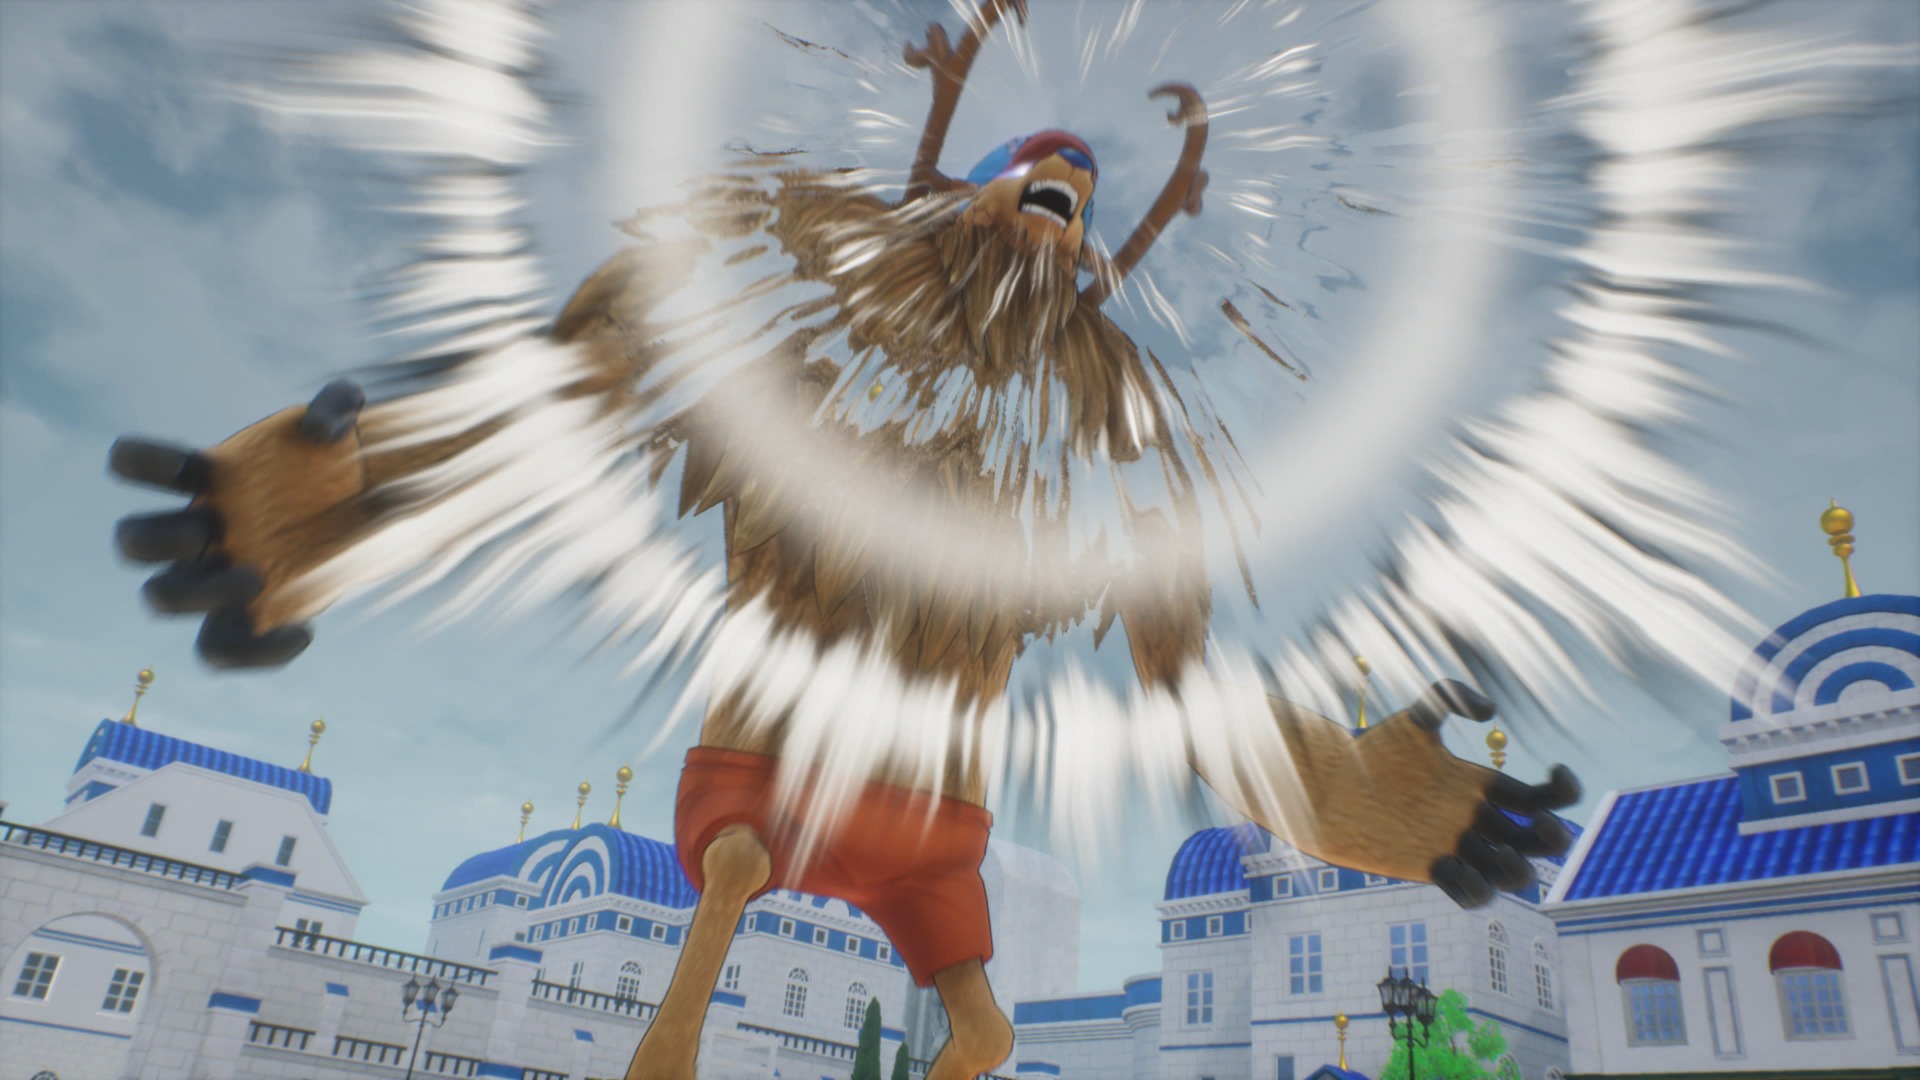 Review: One Piece Odyssey até pode ser divertido, mas só para os fãs